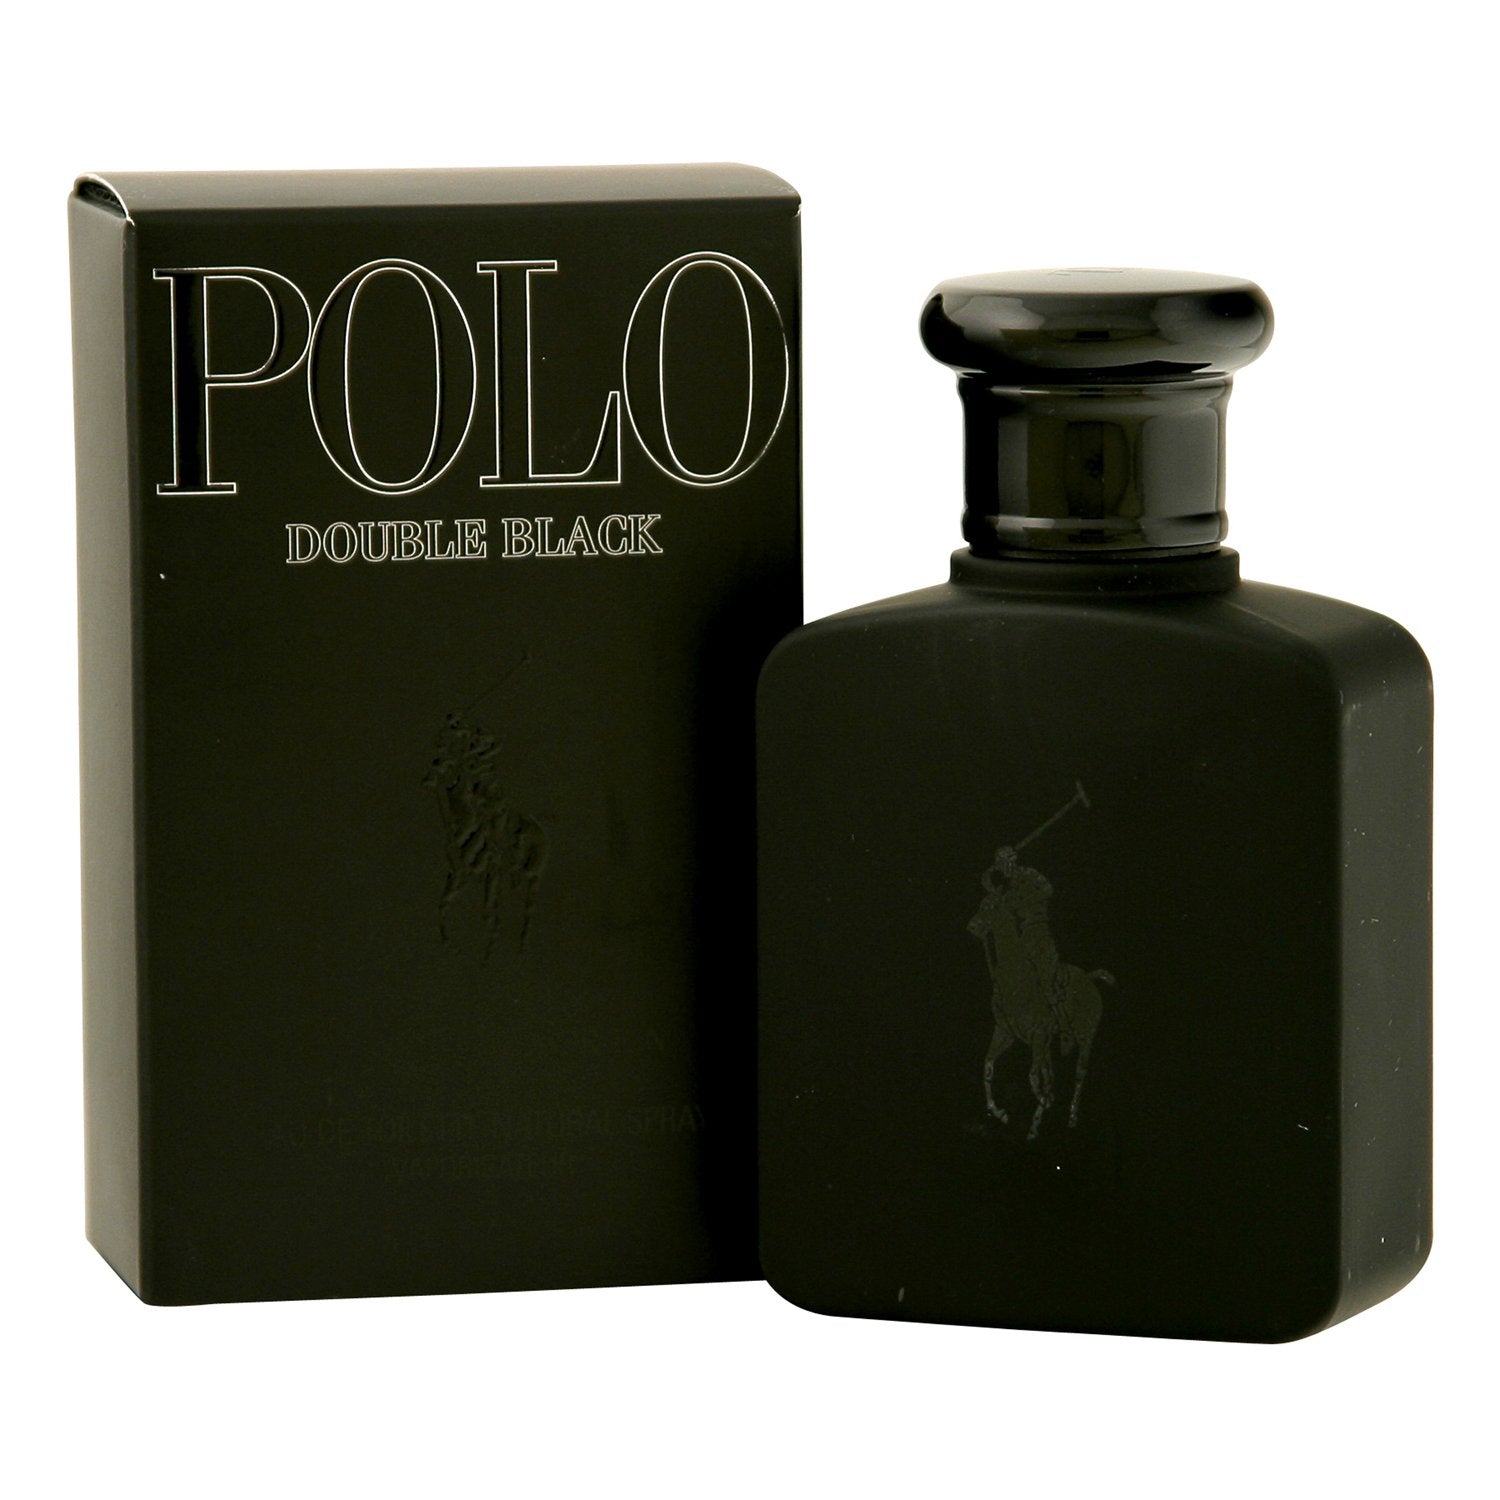 https://fragranceroom.com/cdn/shop/products/cologne-polo-double-black-for-men-by-ralph-lauren-eau-de-toilette-spray-1.jpg?v=1546634652